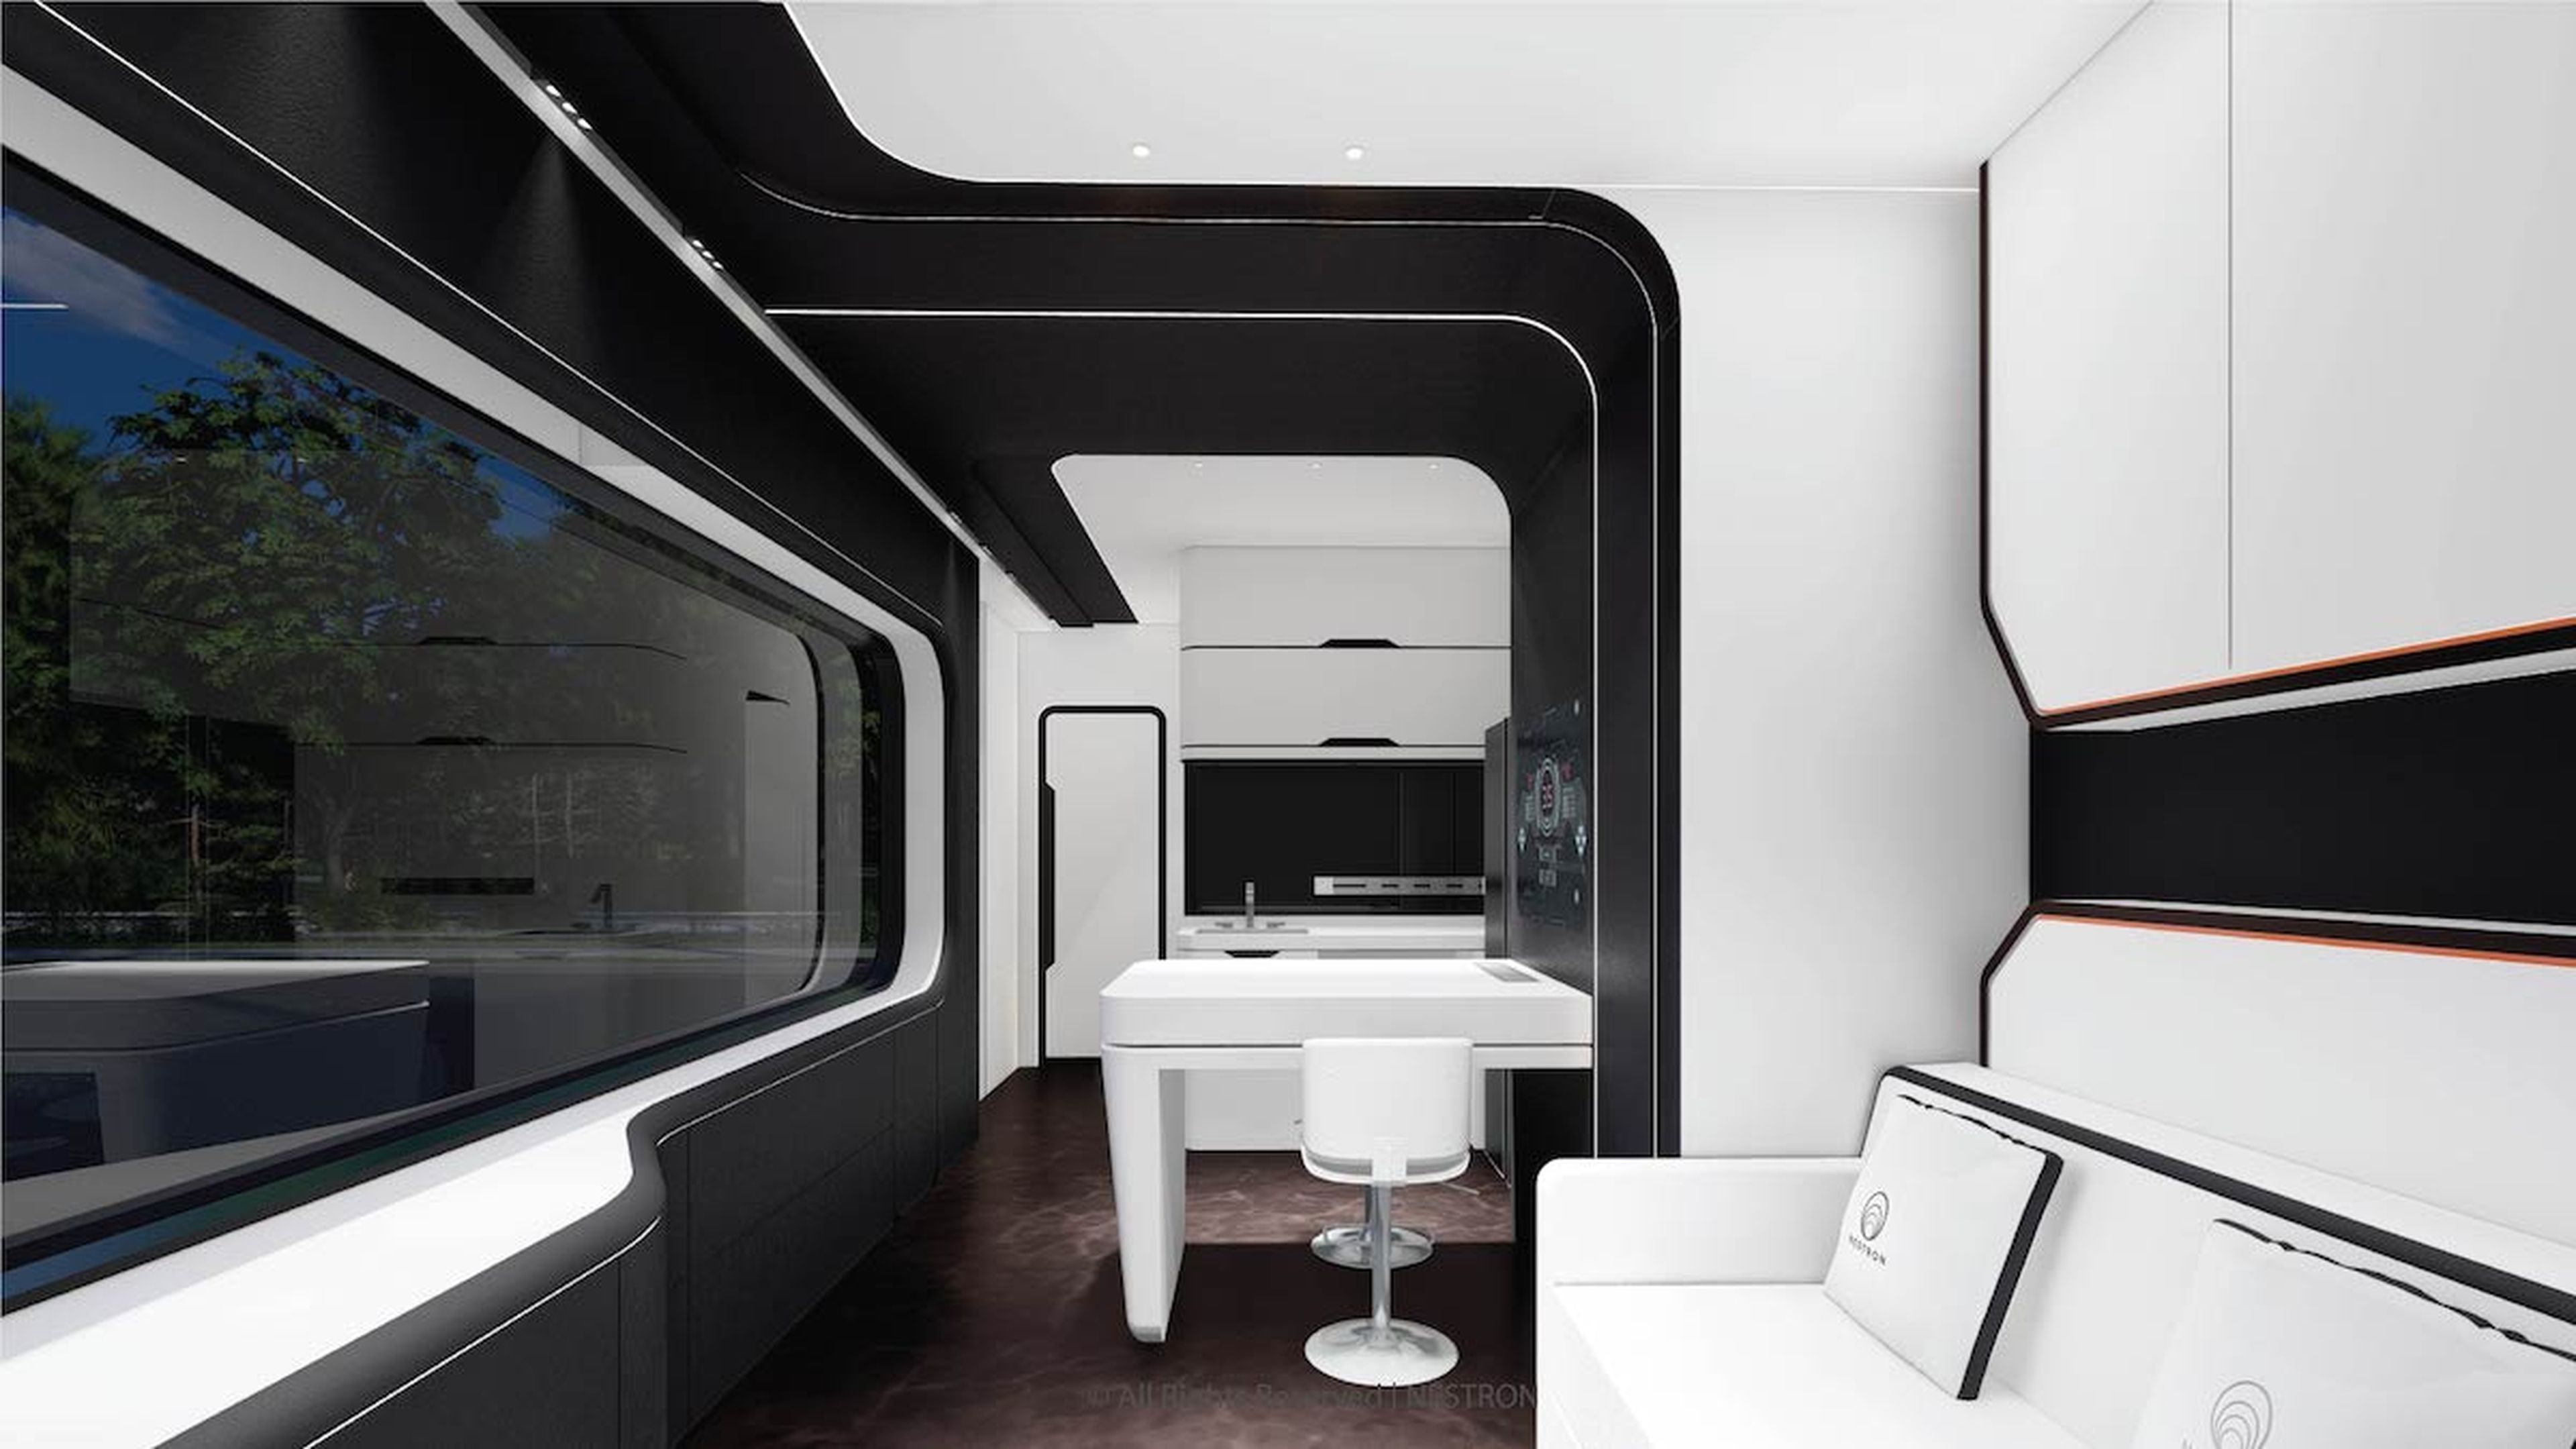 Sala de estar y cocina de las casas prefabricadas futuristas de Nestron.